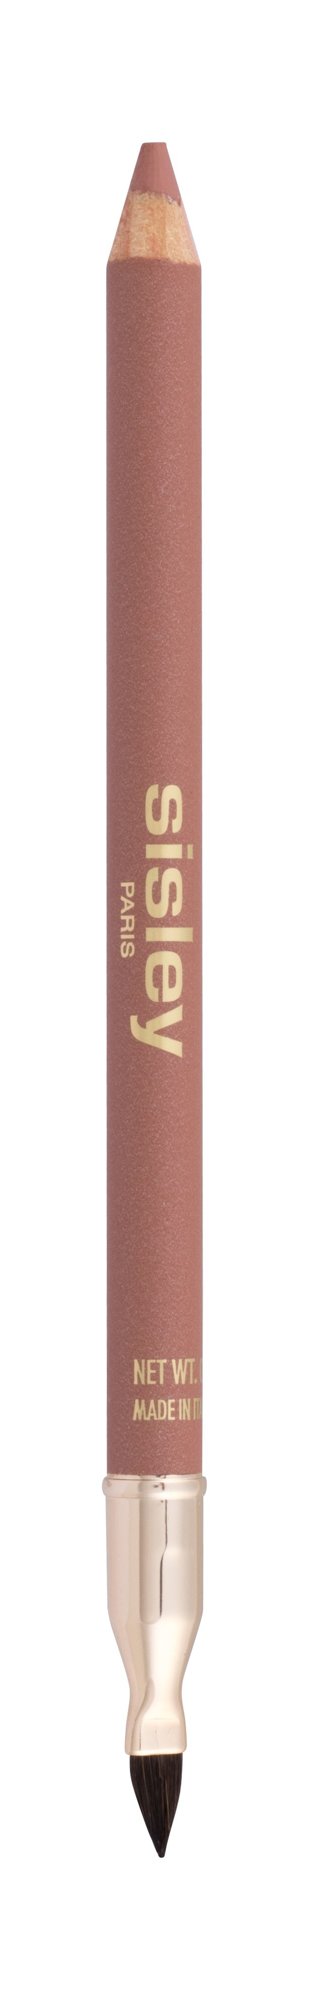 Sisley Phyto Levres Perfect 1,45g NIŠINIAI lūpų pieštukas